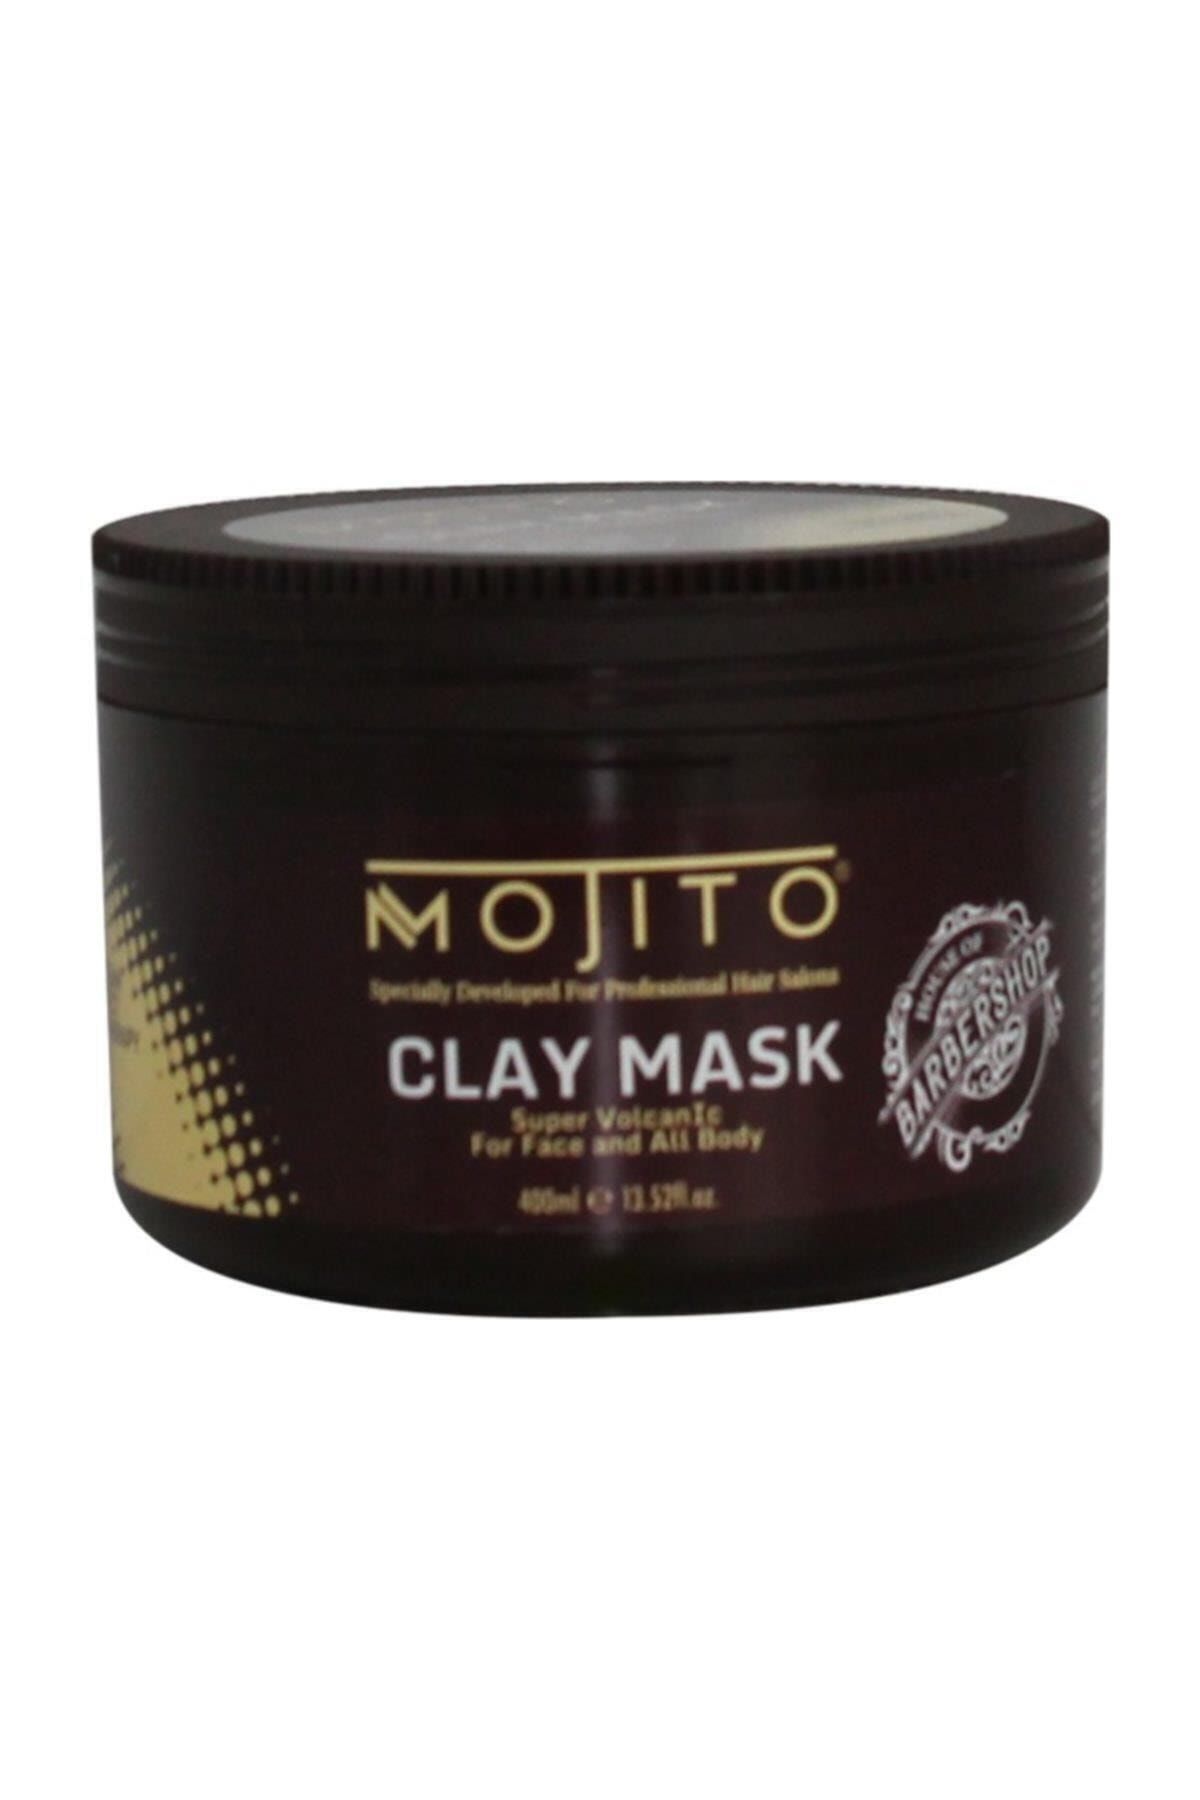 Mojito Clay Mask 400ml